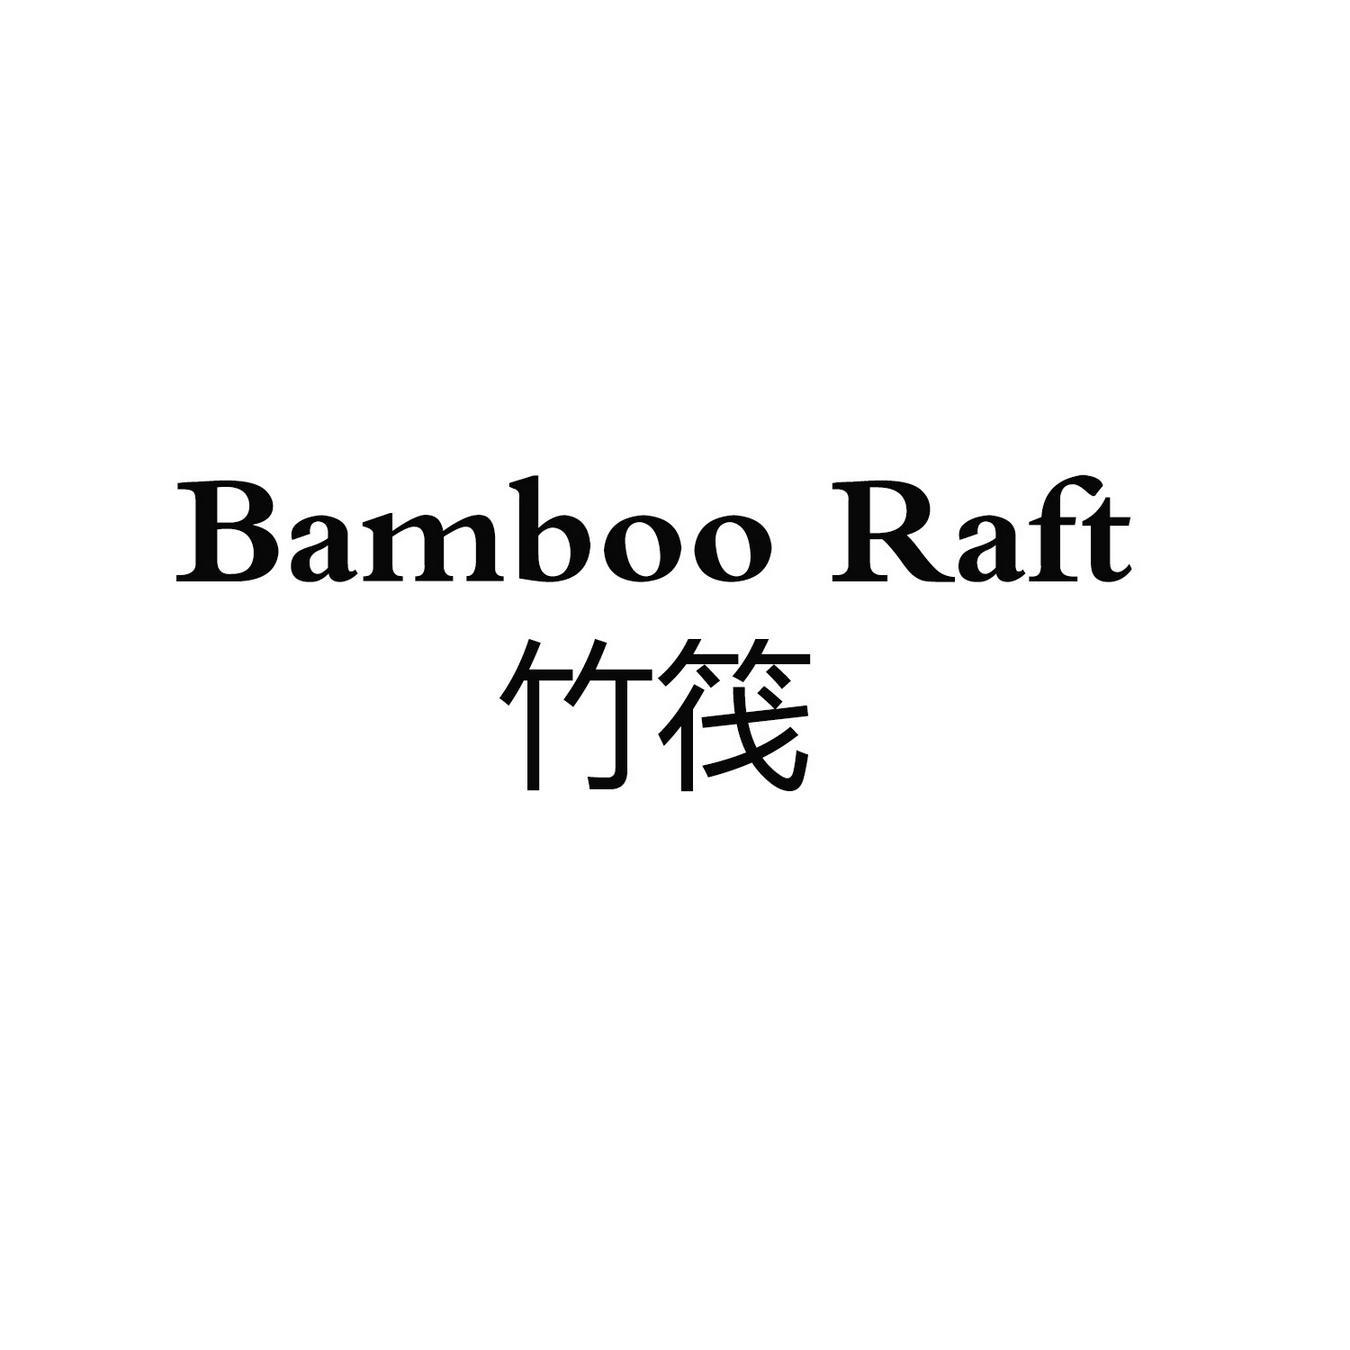 BAMBOO RAFT 竹筏